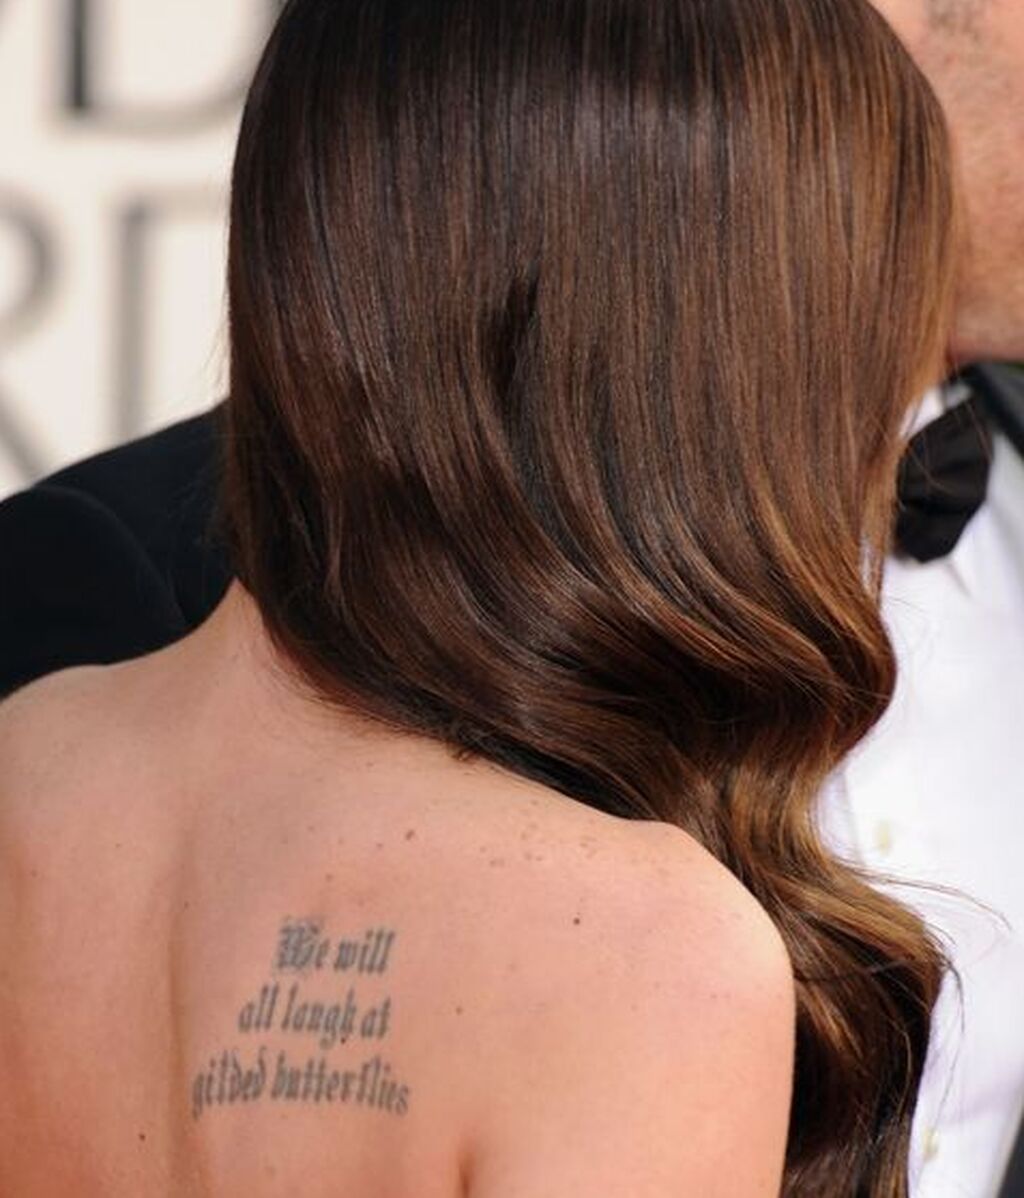 Megan Fox tiene escrito 'Todos nos reiremos de las mariposas doradas'.